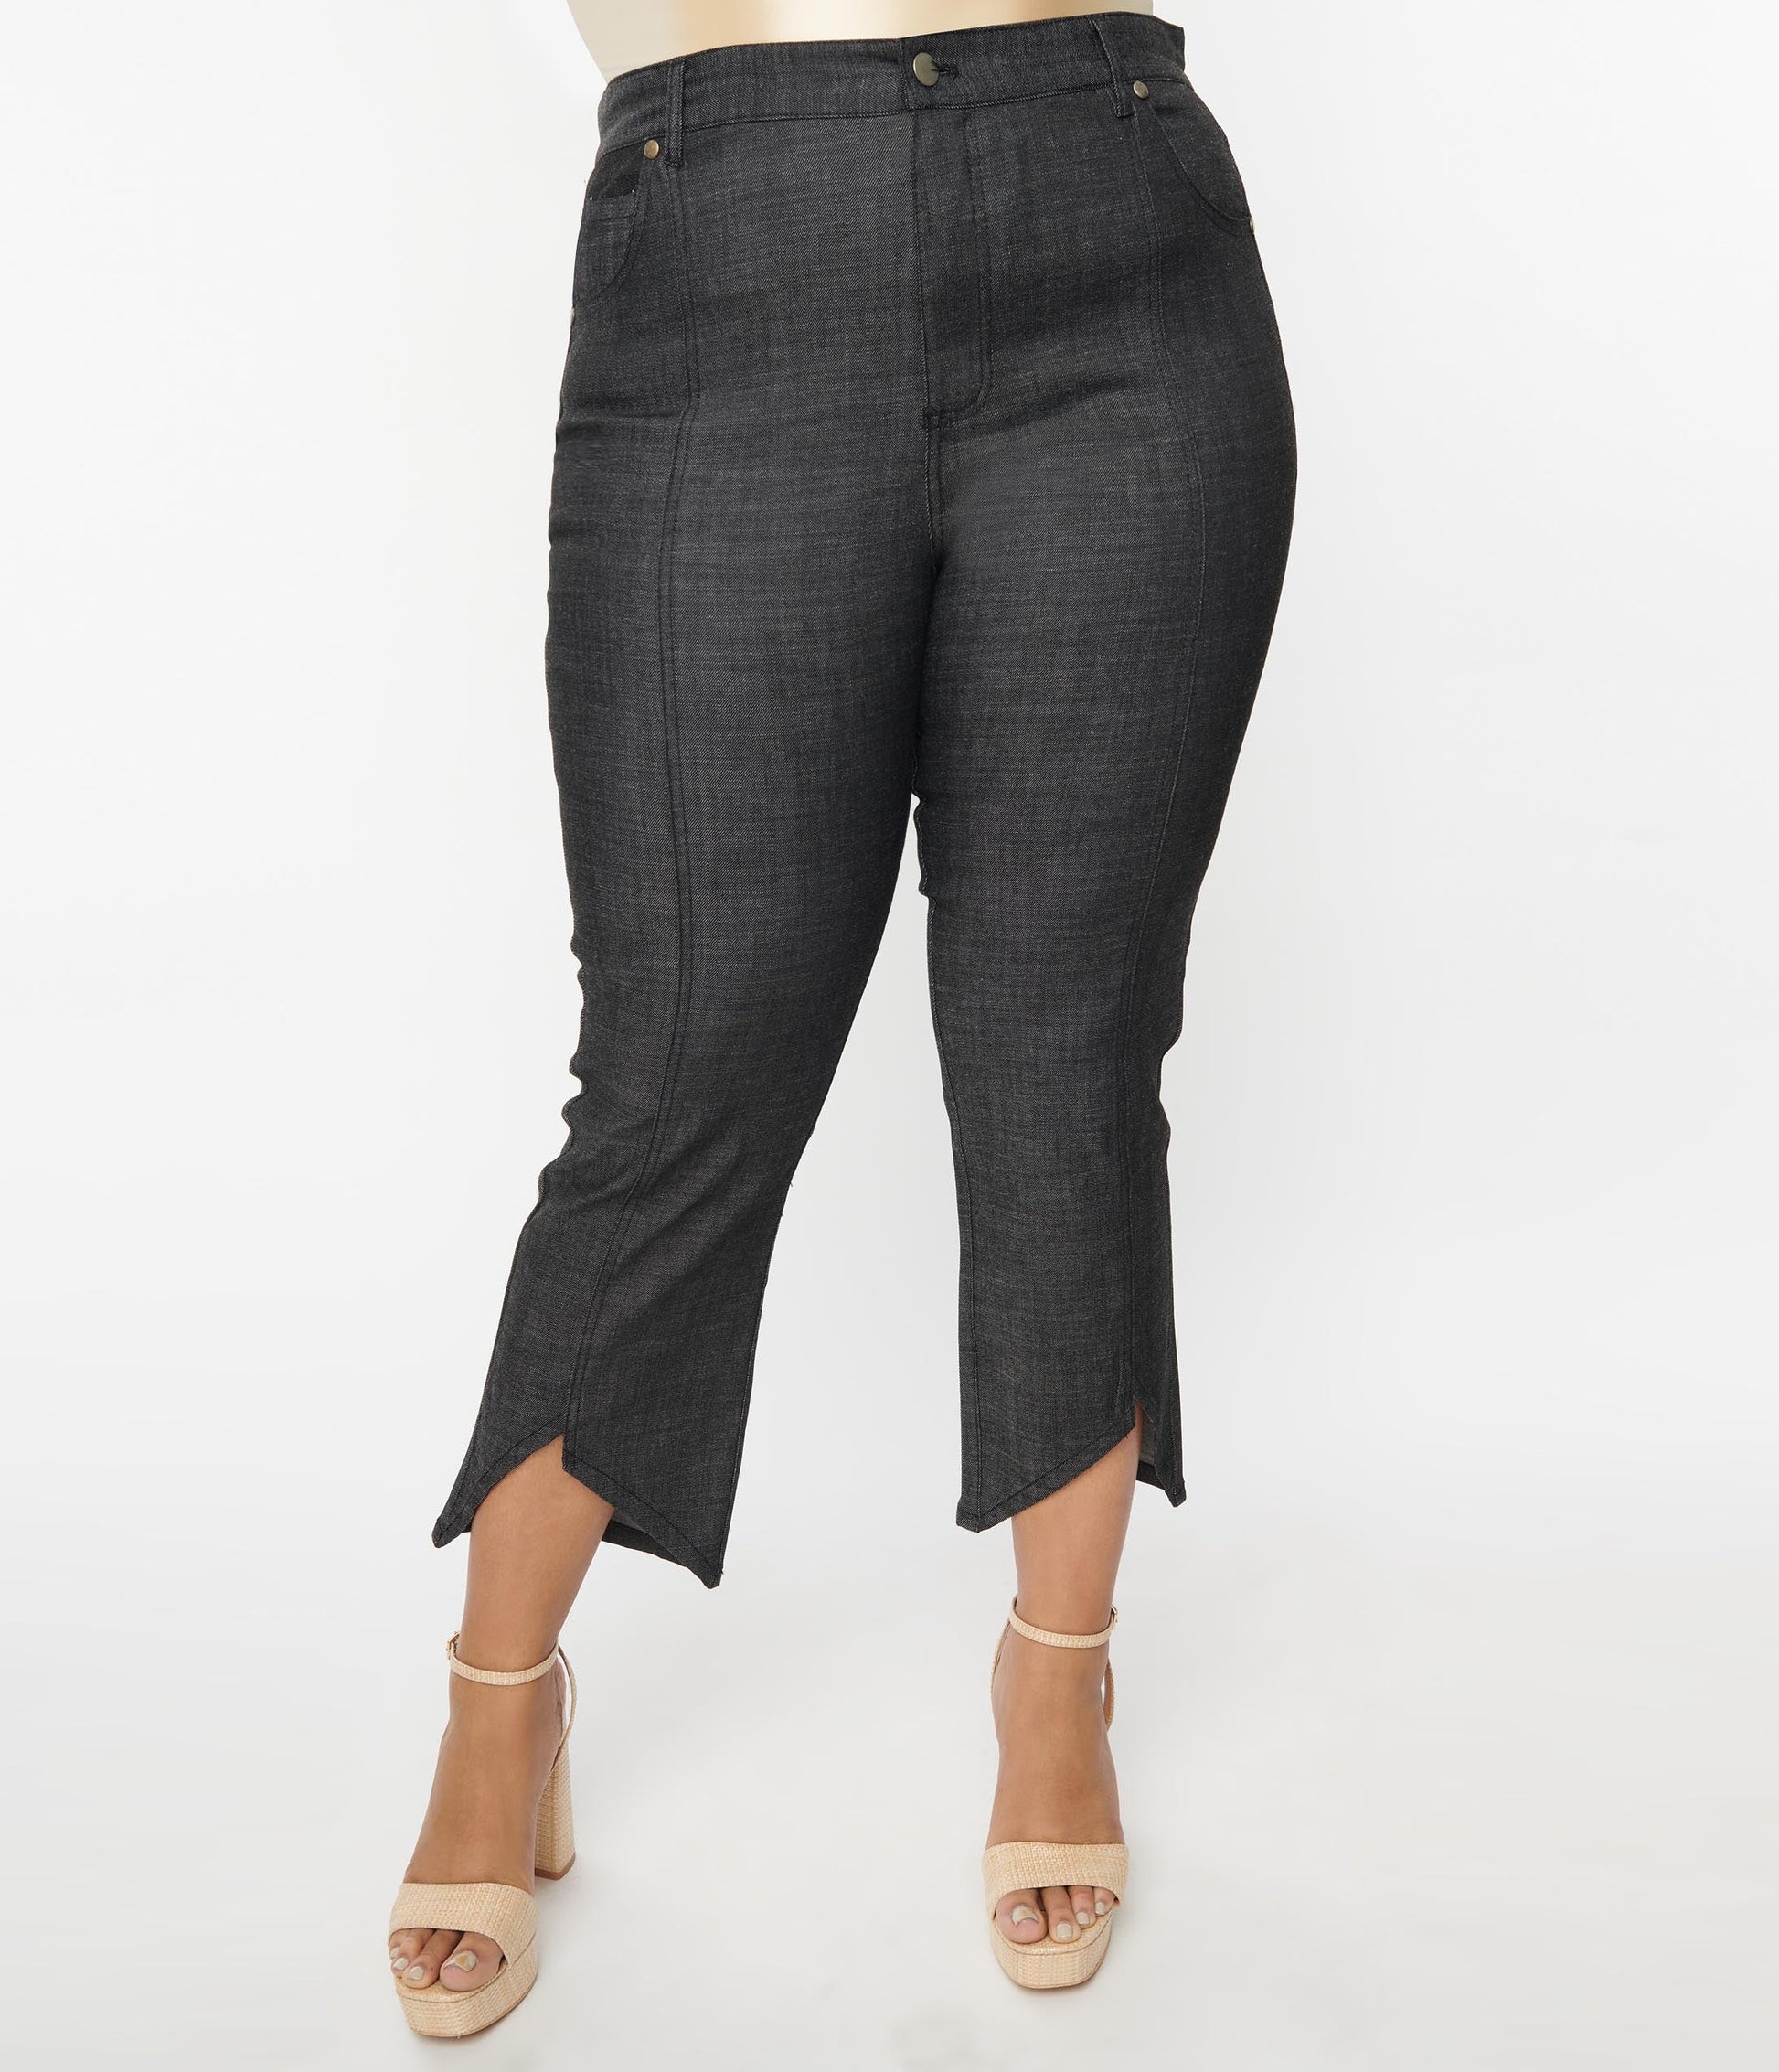 Smak Parlour Plus Size Black Denim Notched Capri Jeans - Unique Vintage - Womens, BOTTOMS, CAPRI